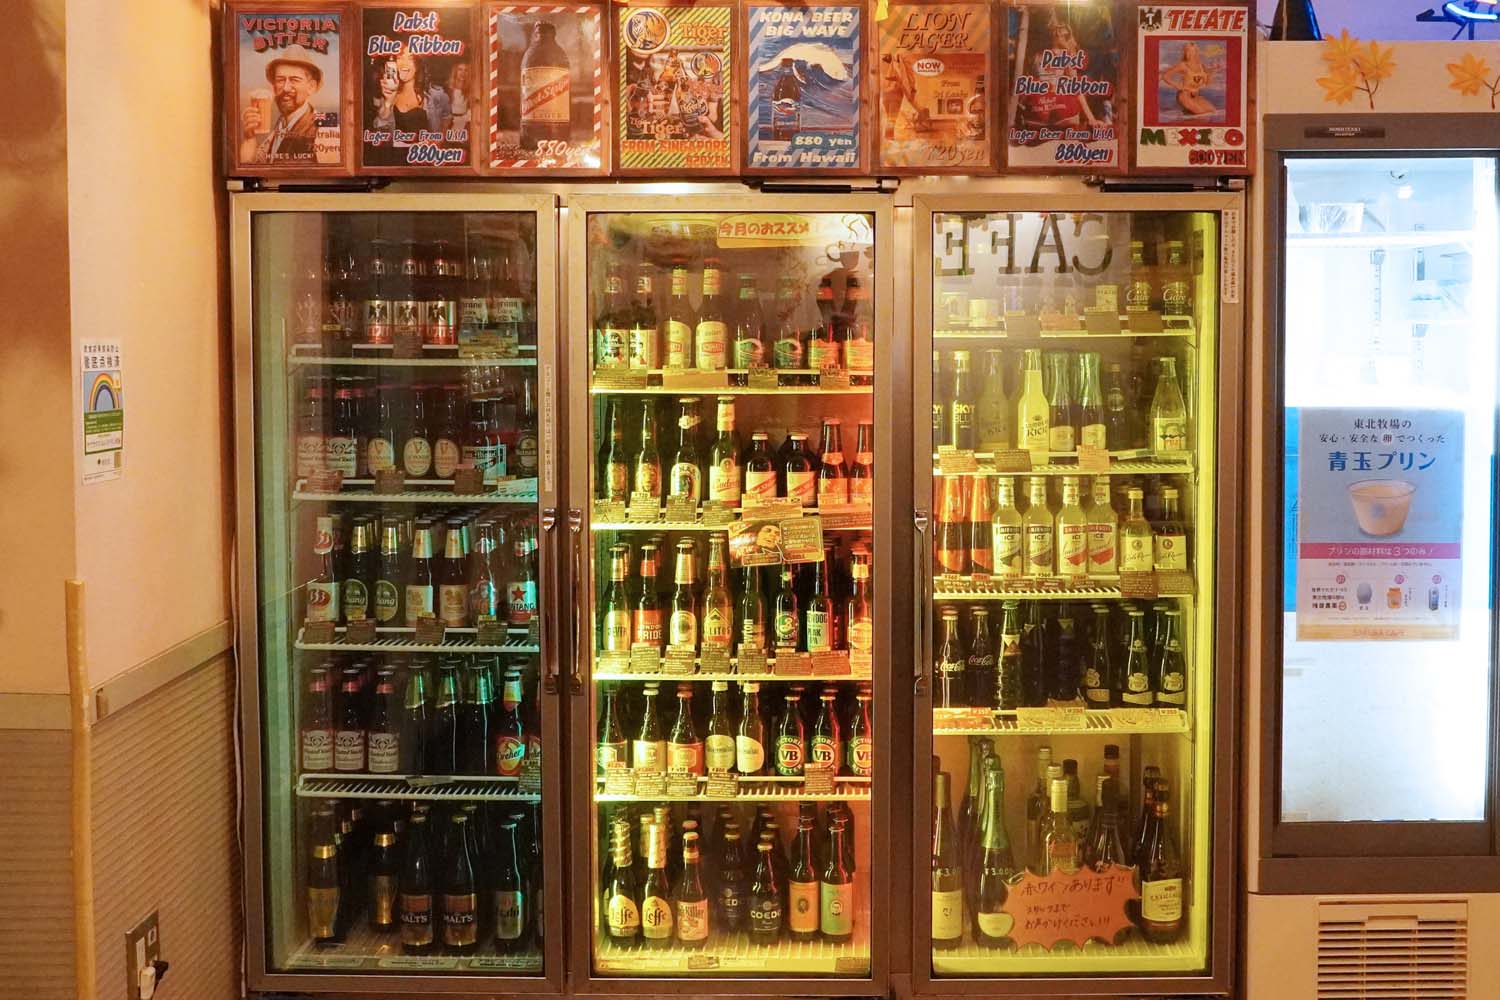 チェコやデンマーク、タヒチなど時期によって銘柄が異なる。ここでしか飲めないビールがそろう。